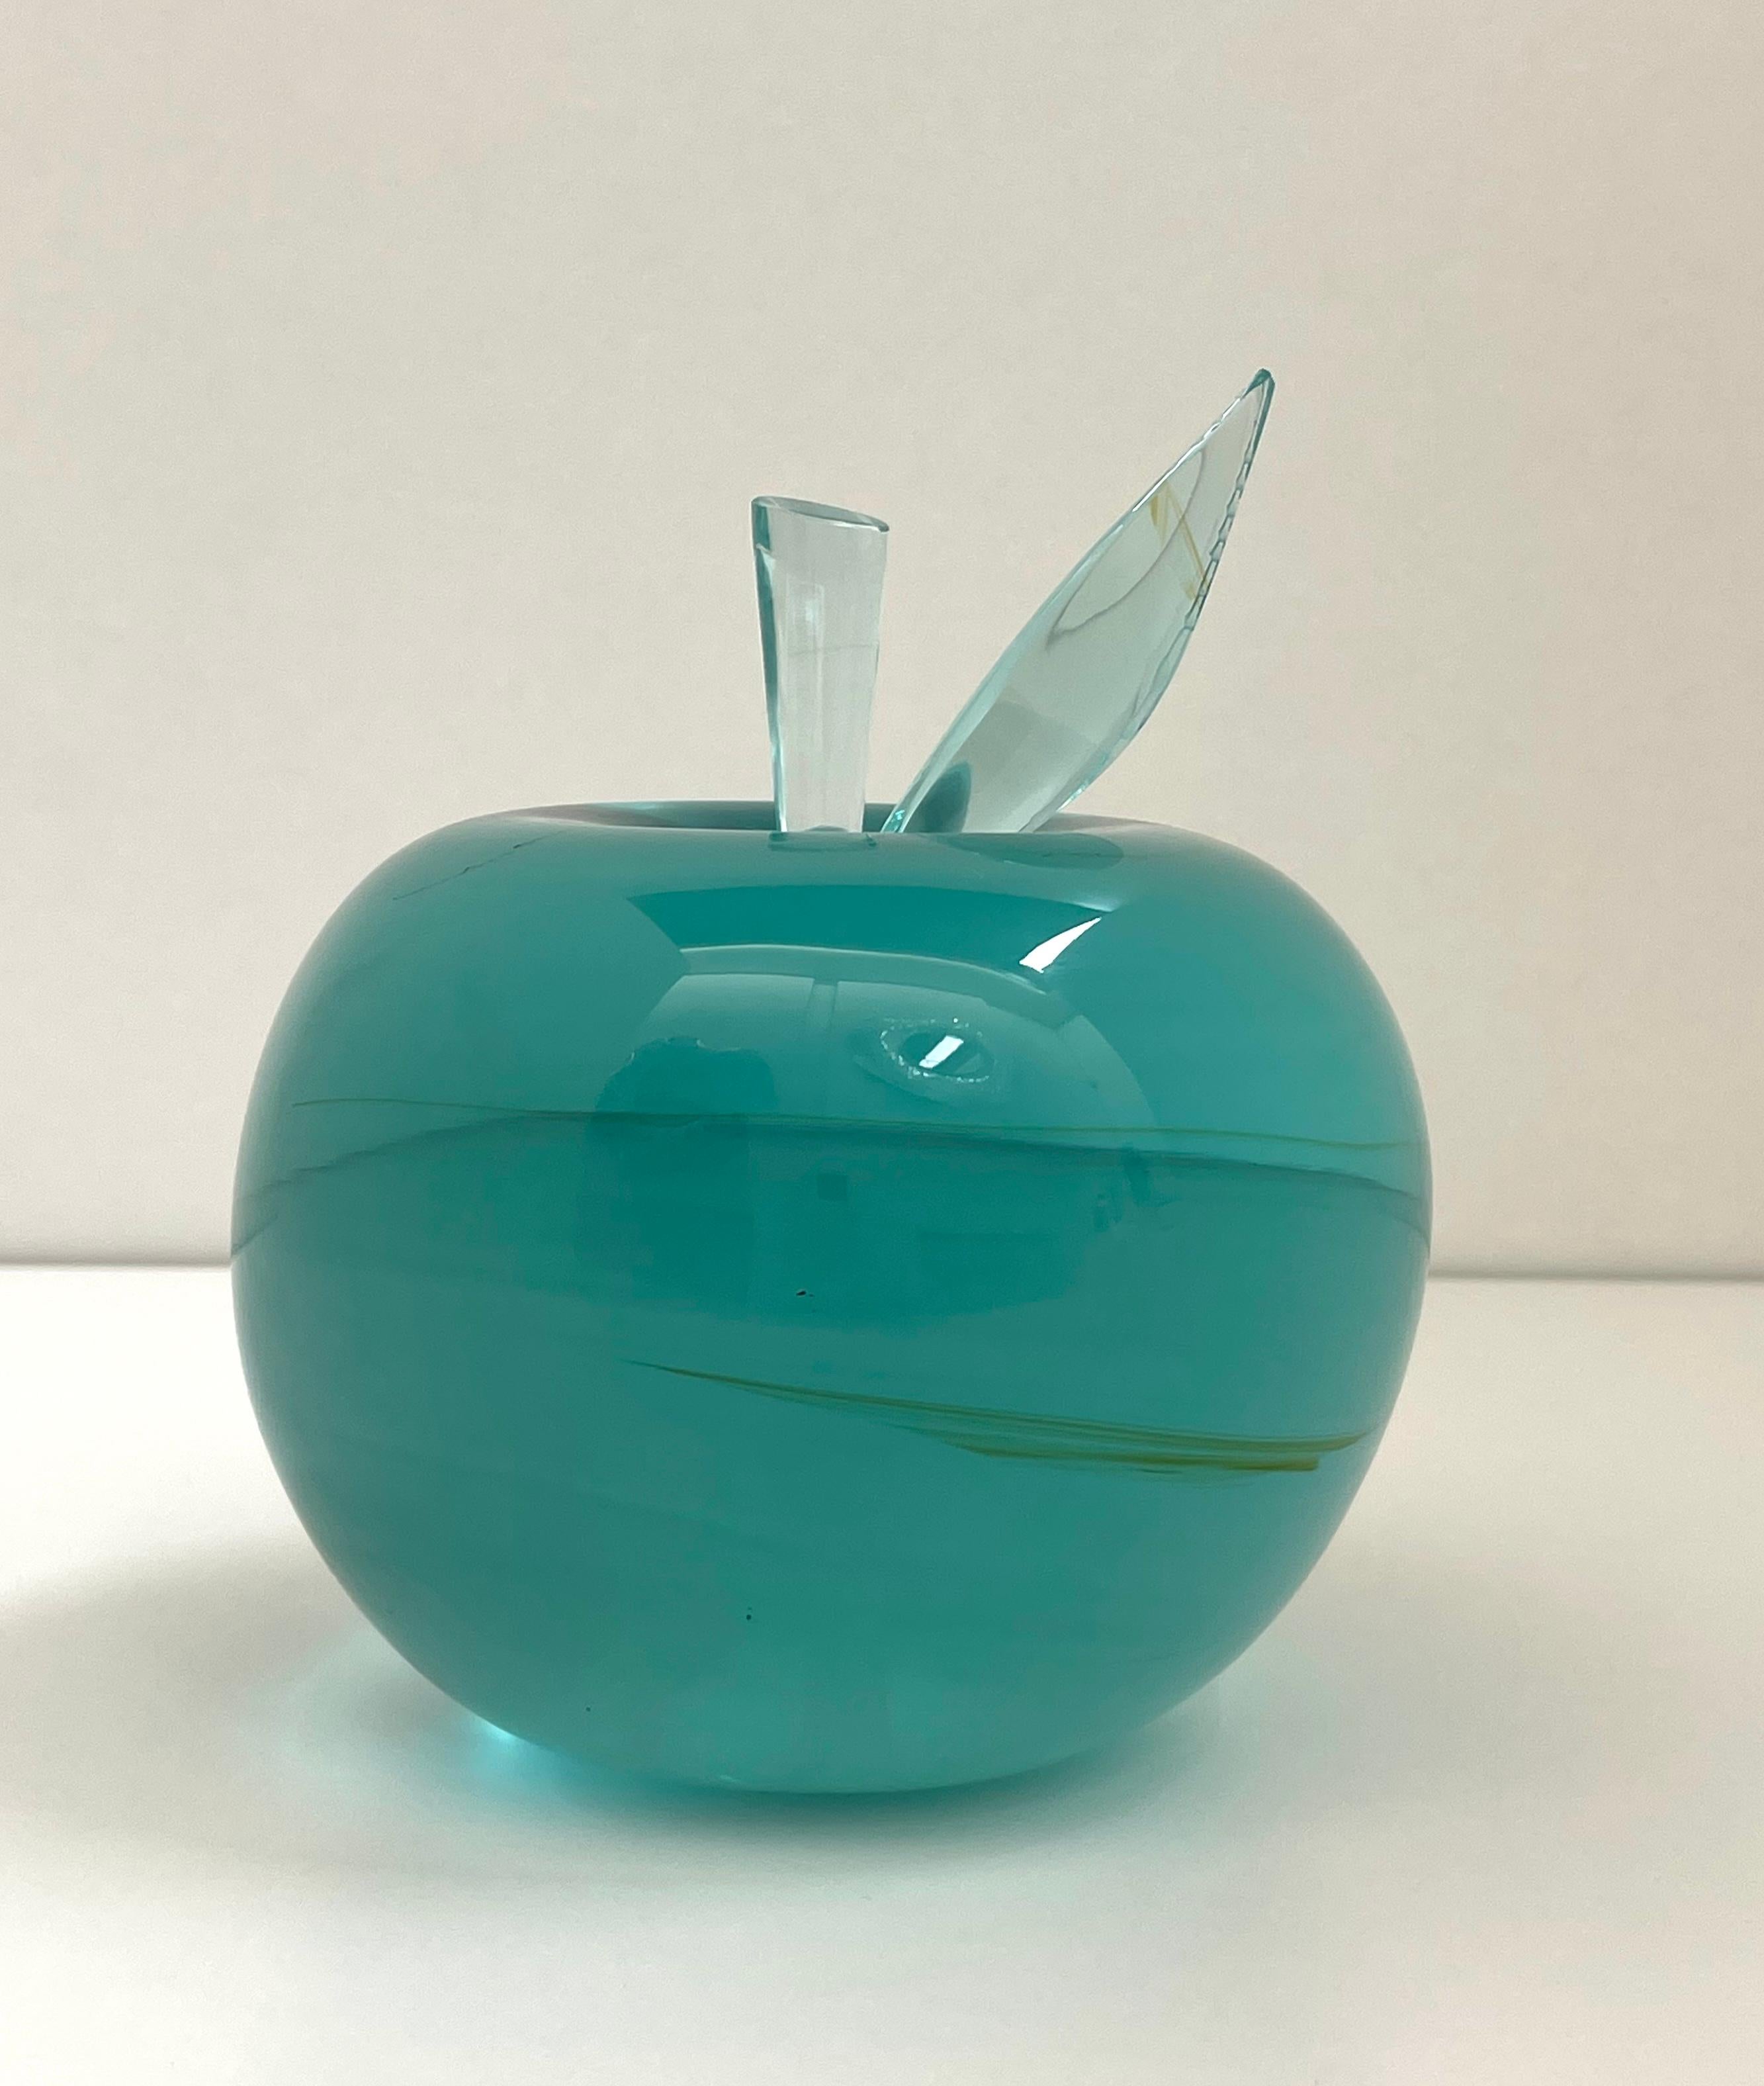 Cette pomme a été fabriquée à partir d'un bloc de cristal d'aigue-marine brut et naturel.
Ce bloc a été broyé et poli pendant plusieurs heures à la main jusqu'à ce qu'il obtienne la forme d'une pomme et une surface très lisse et brillante.
La